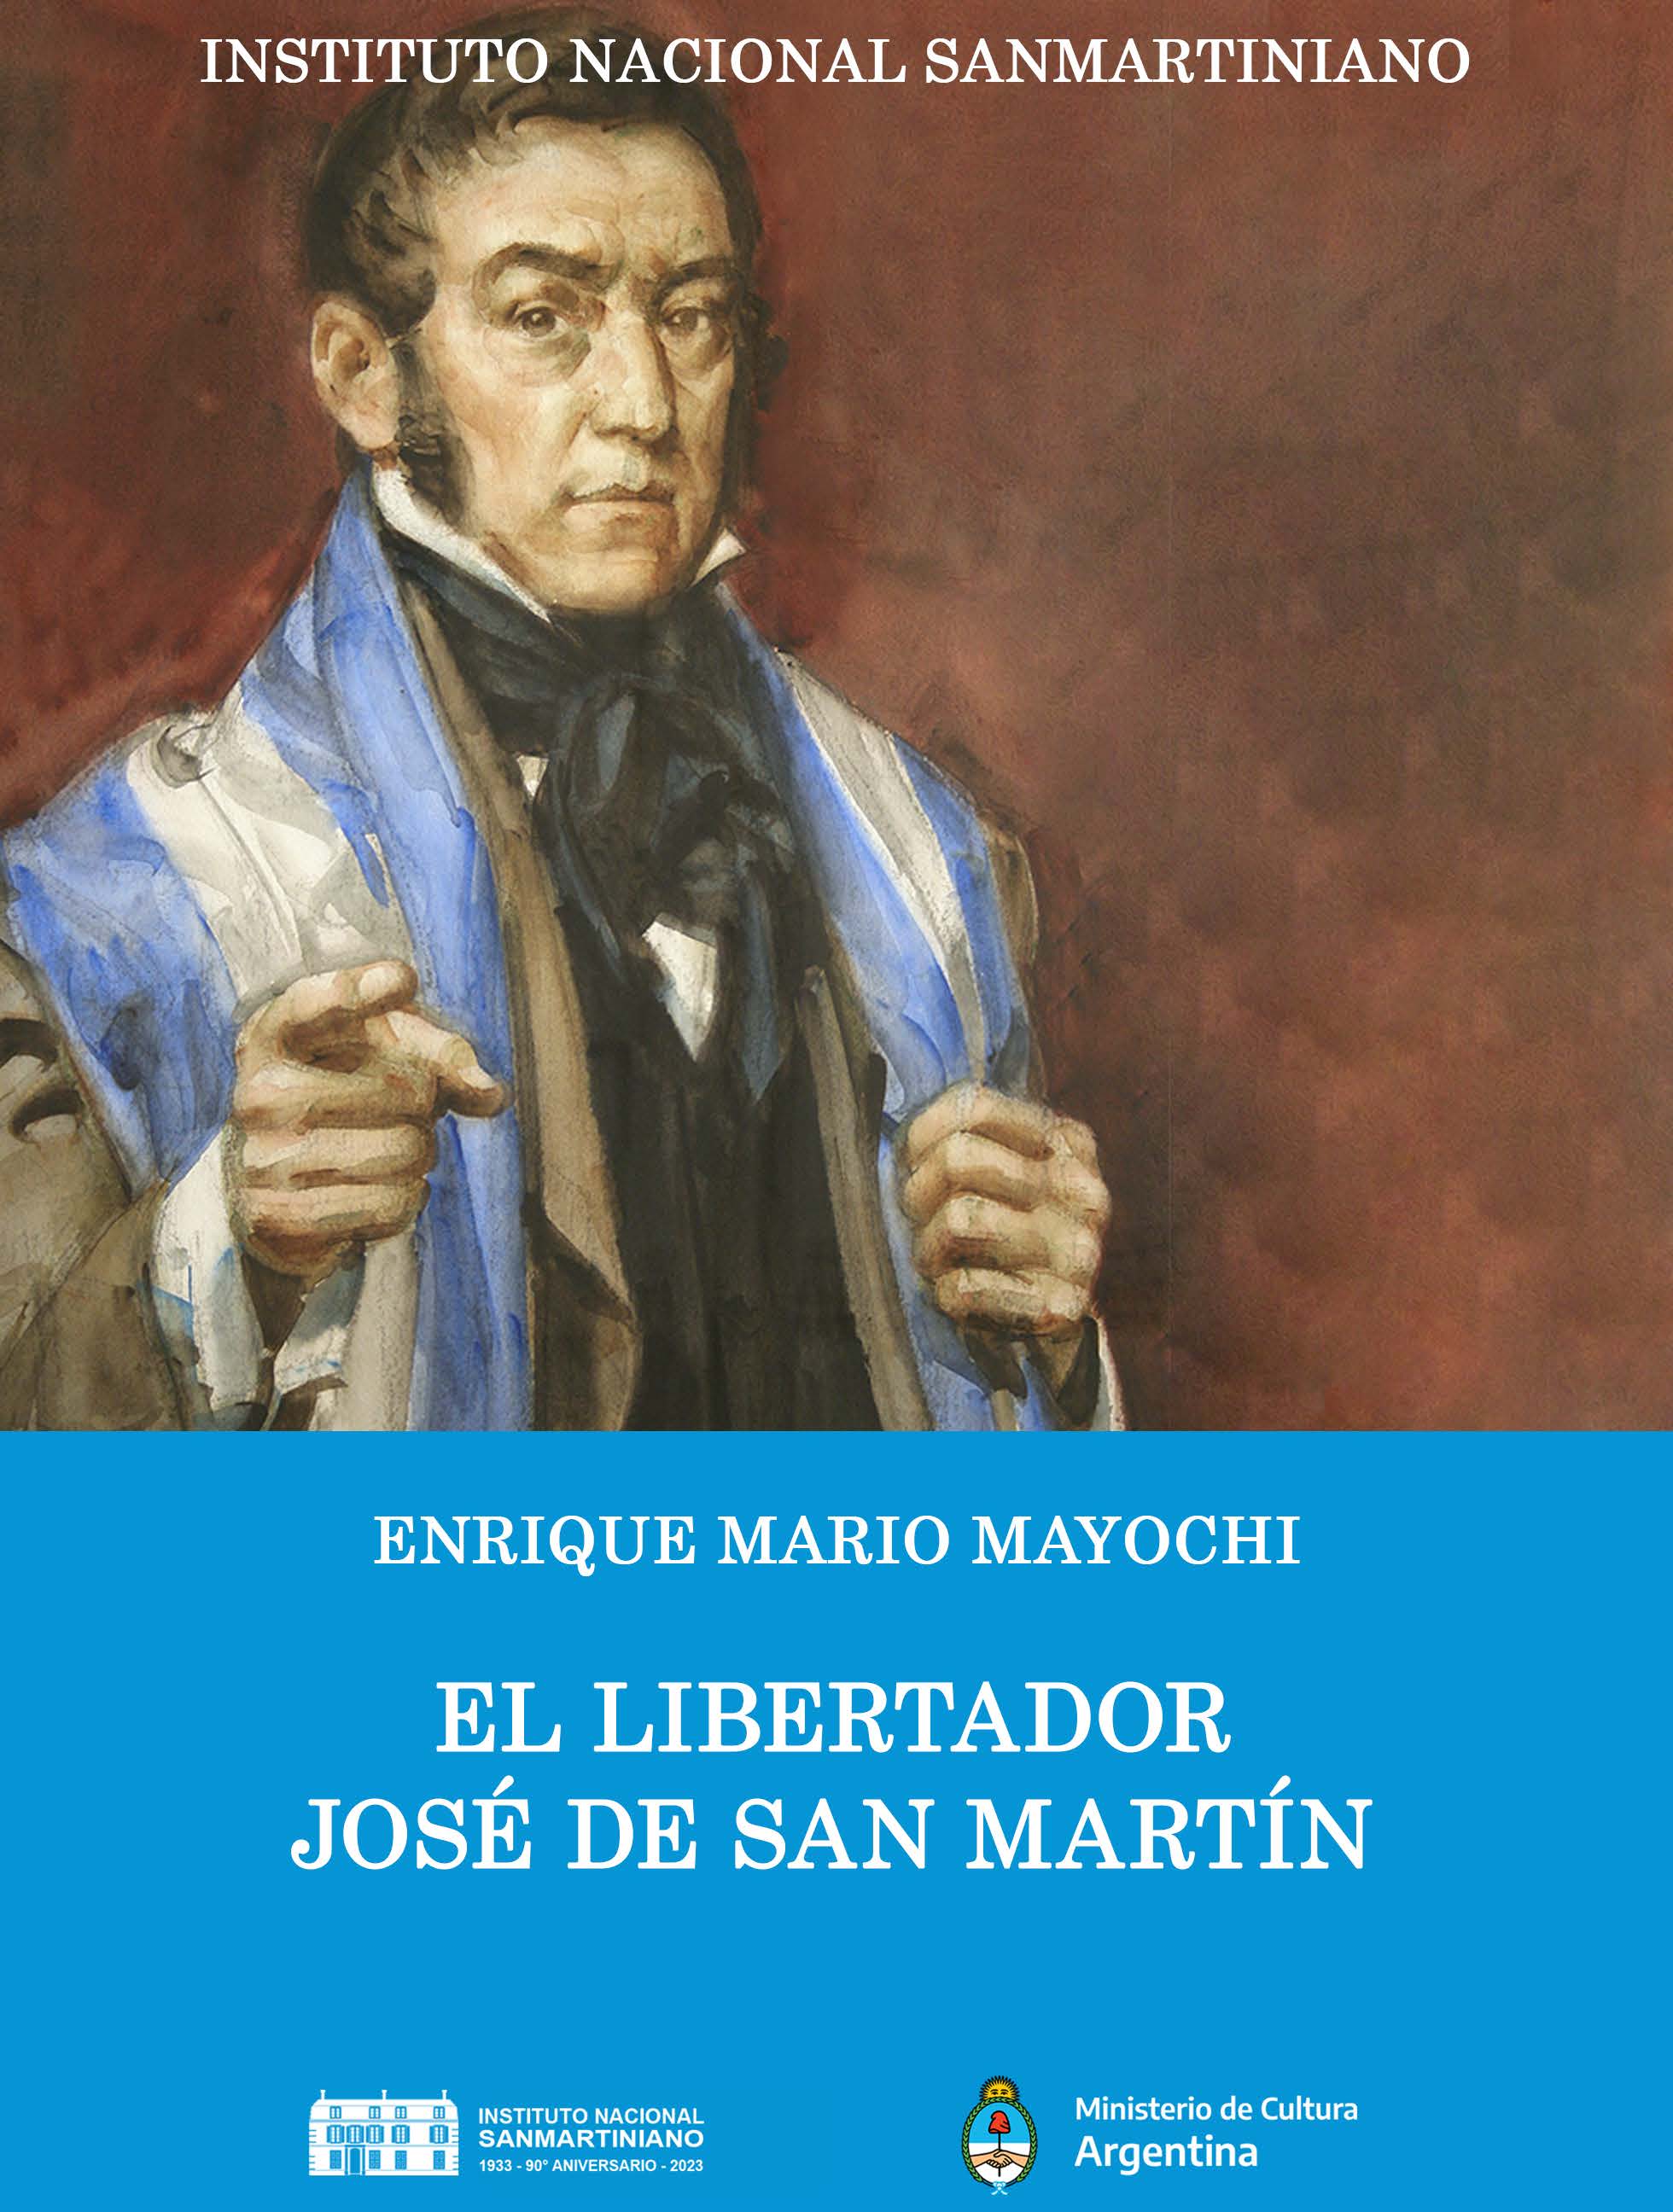 MAYOCHI, Enrique Mario. "El Libertador José de San Martín". Instituto Nacional Sanmartiniano. Buenos Aires, 2023.